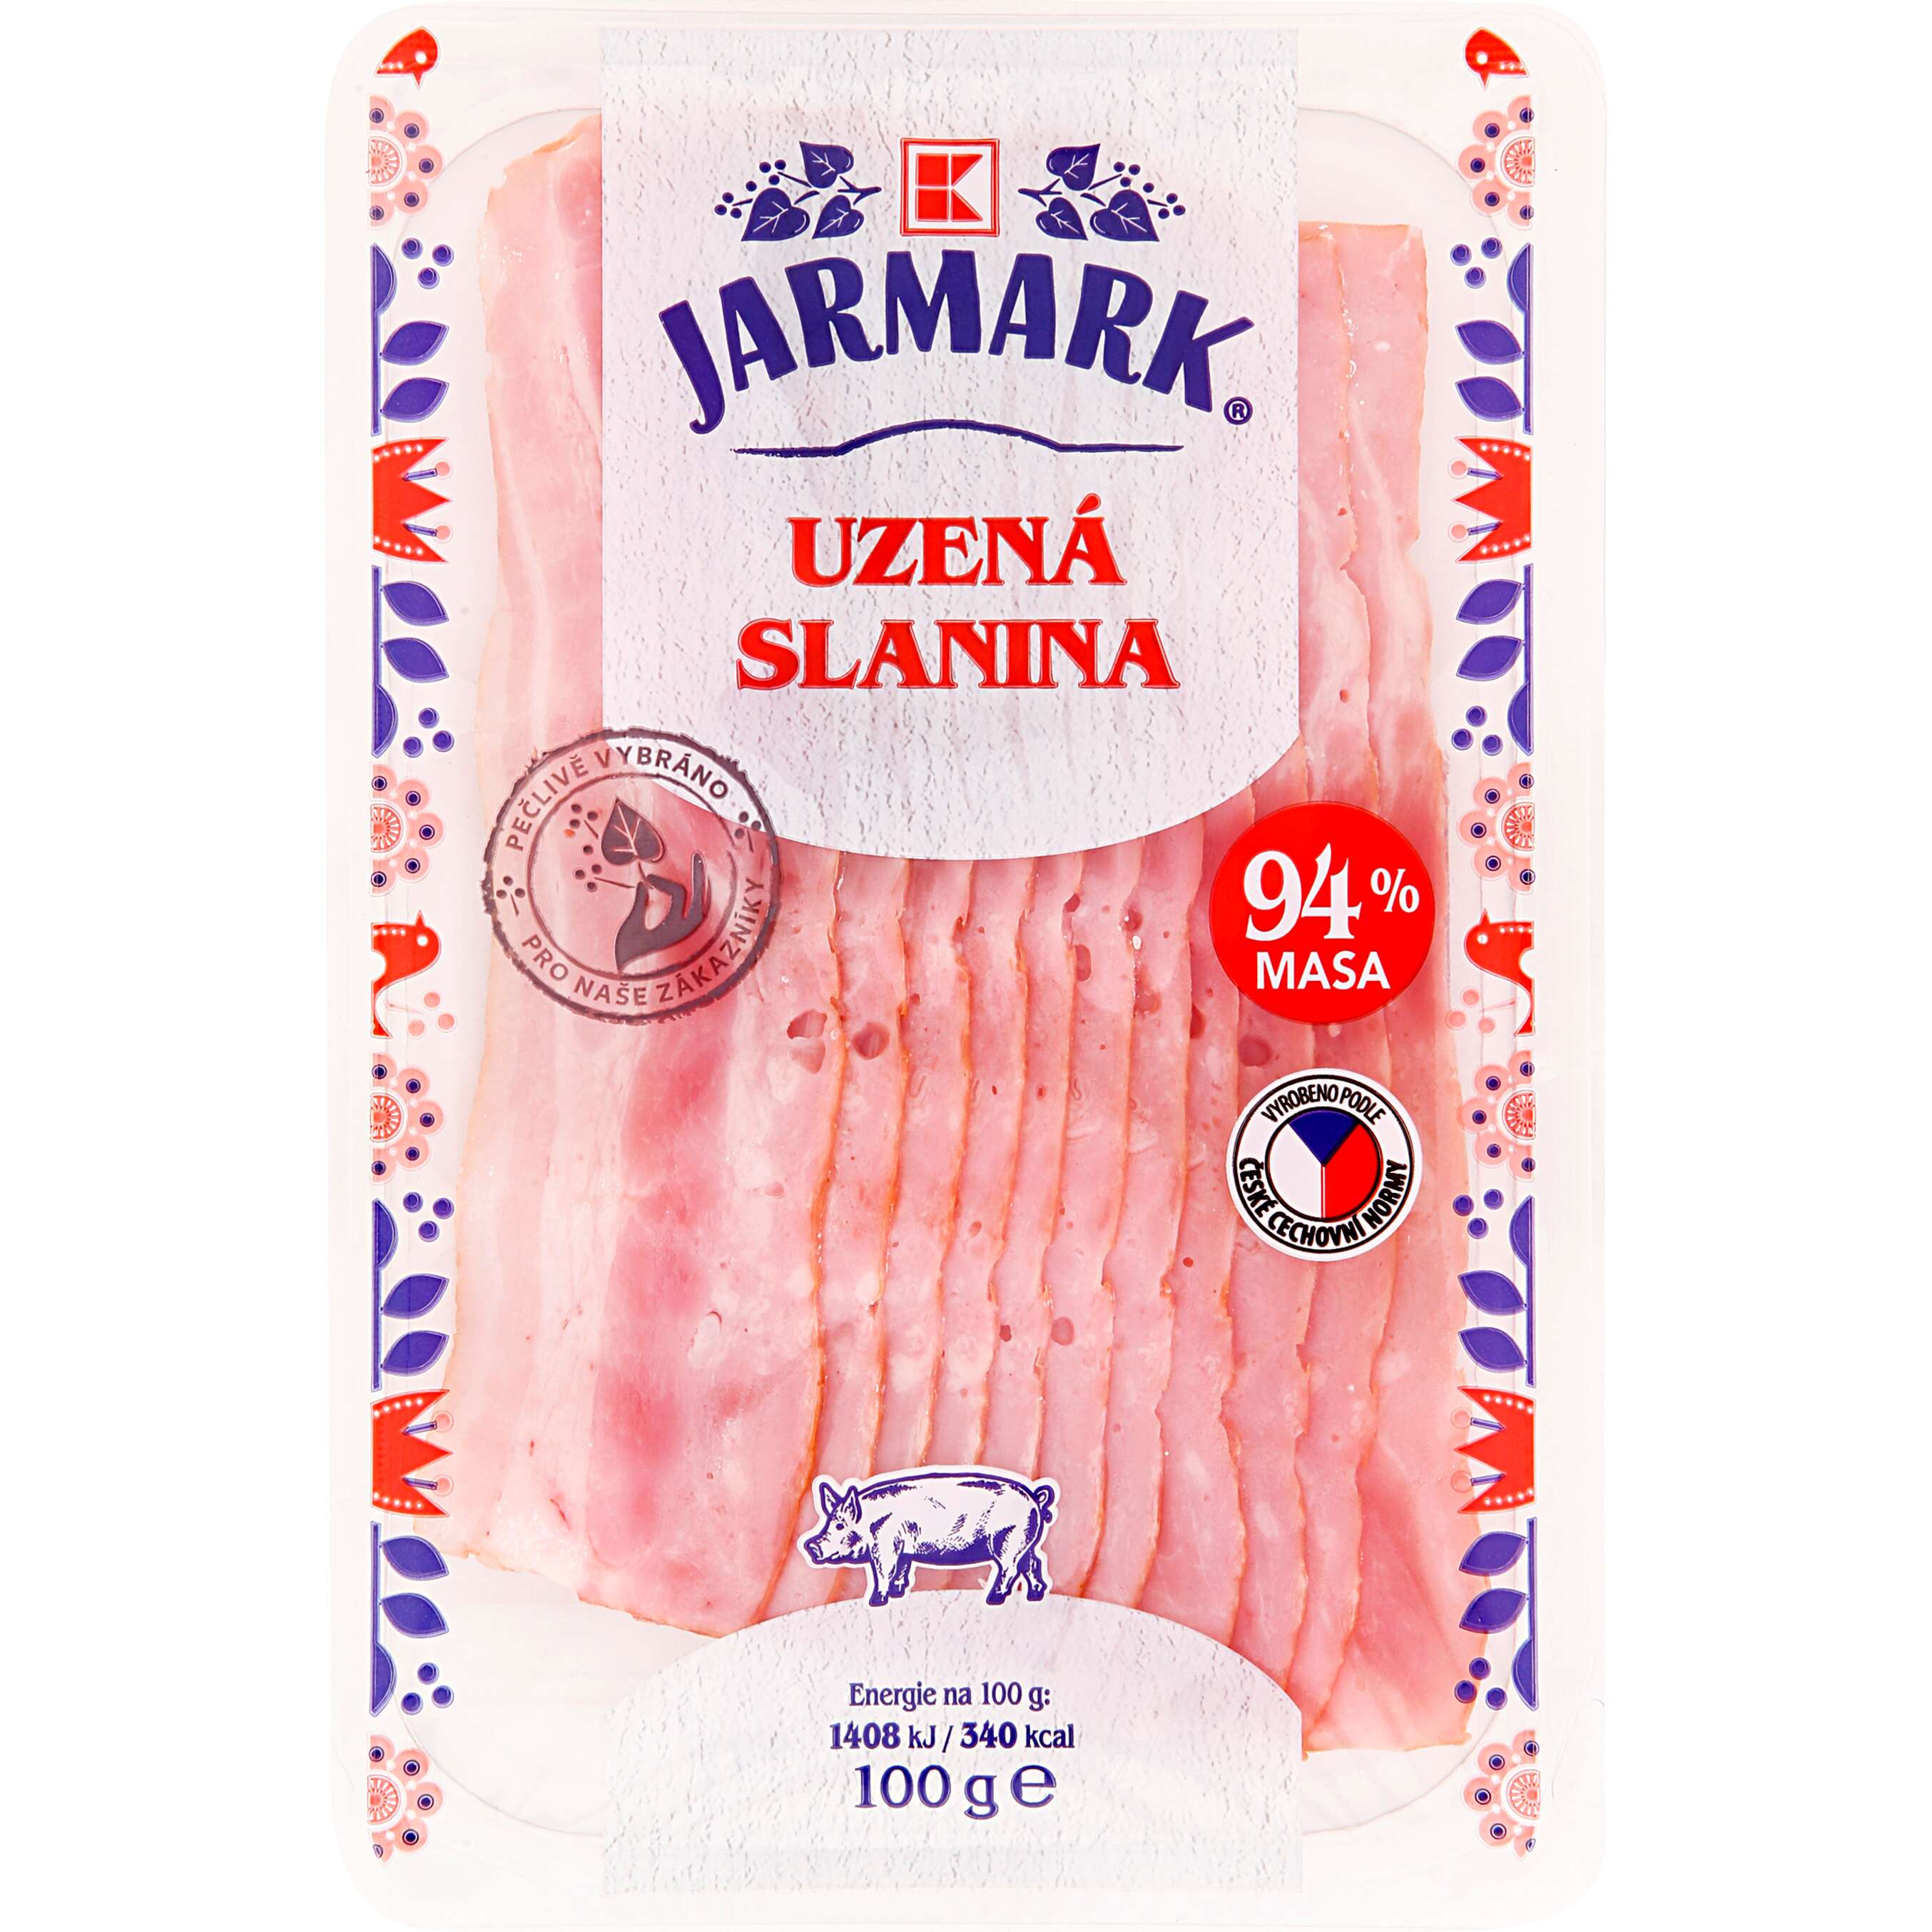 Zobrazit nabídku K-Jarmark Uzená slanina obsah masa 94 %